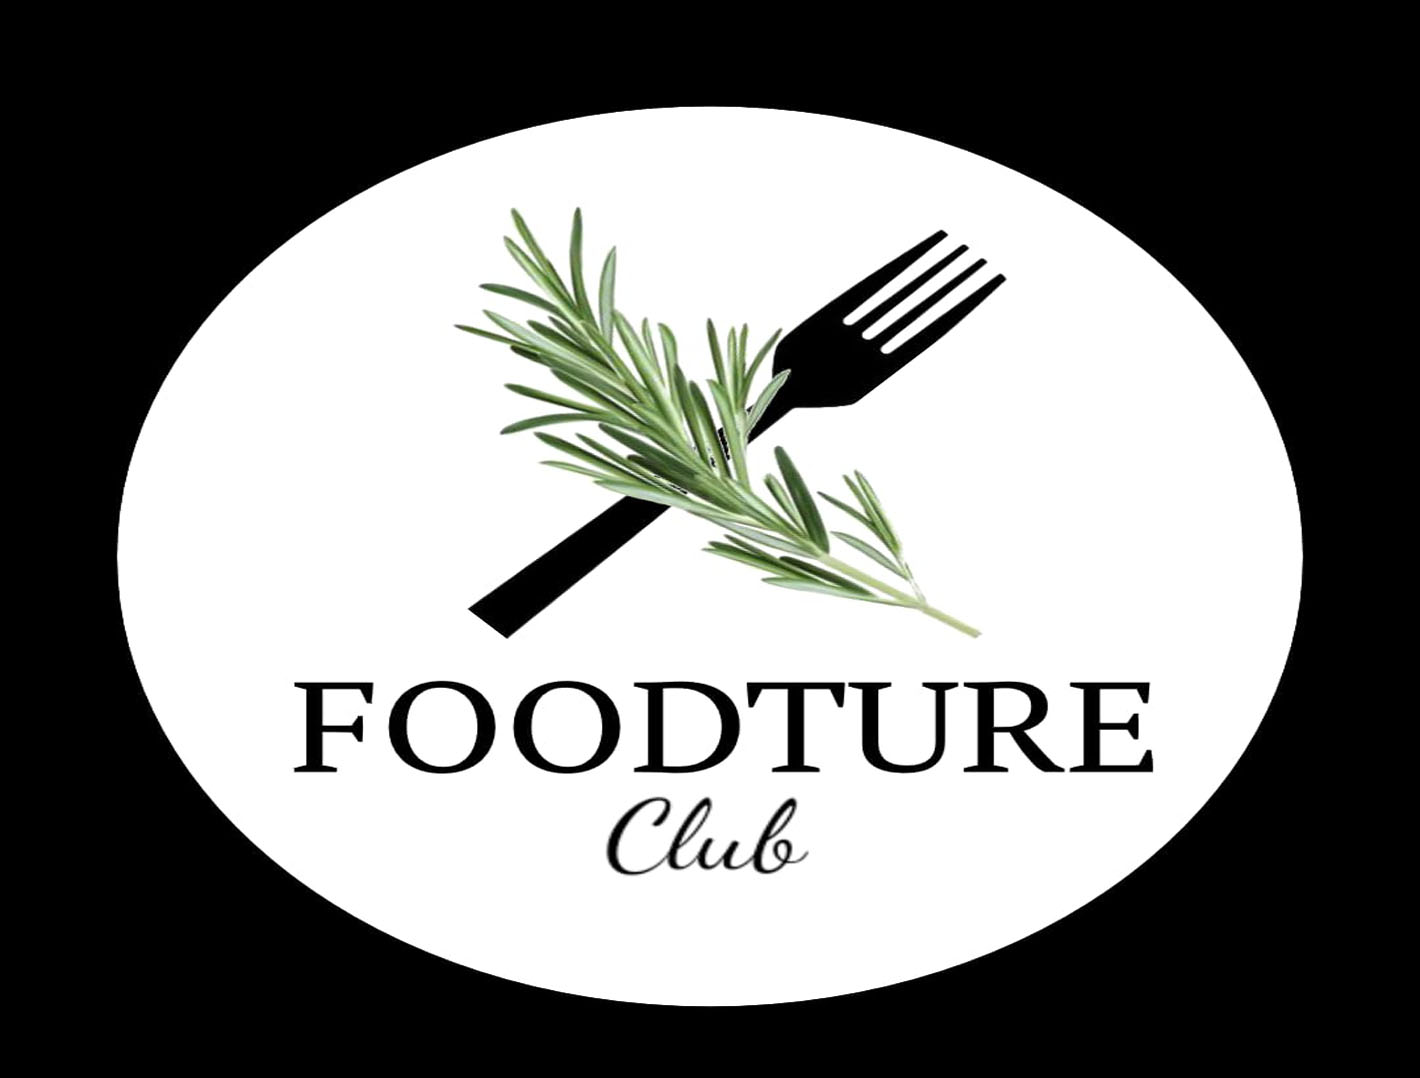 BIT Foodture Club